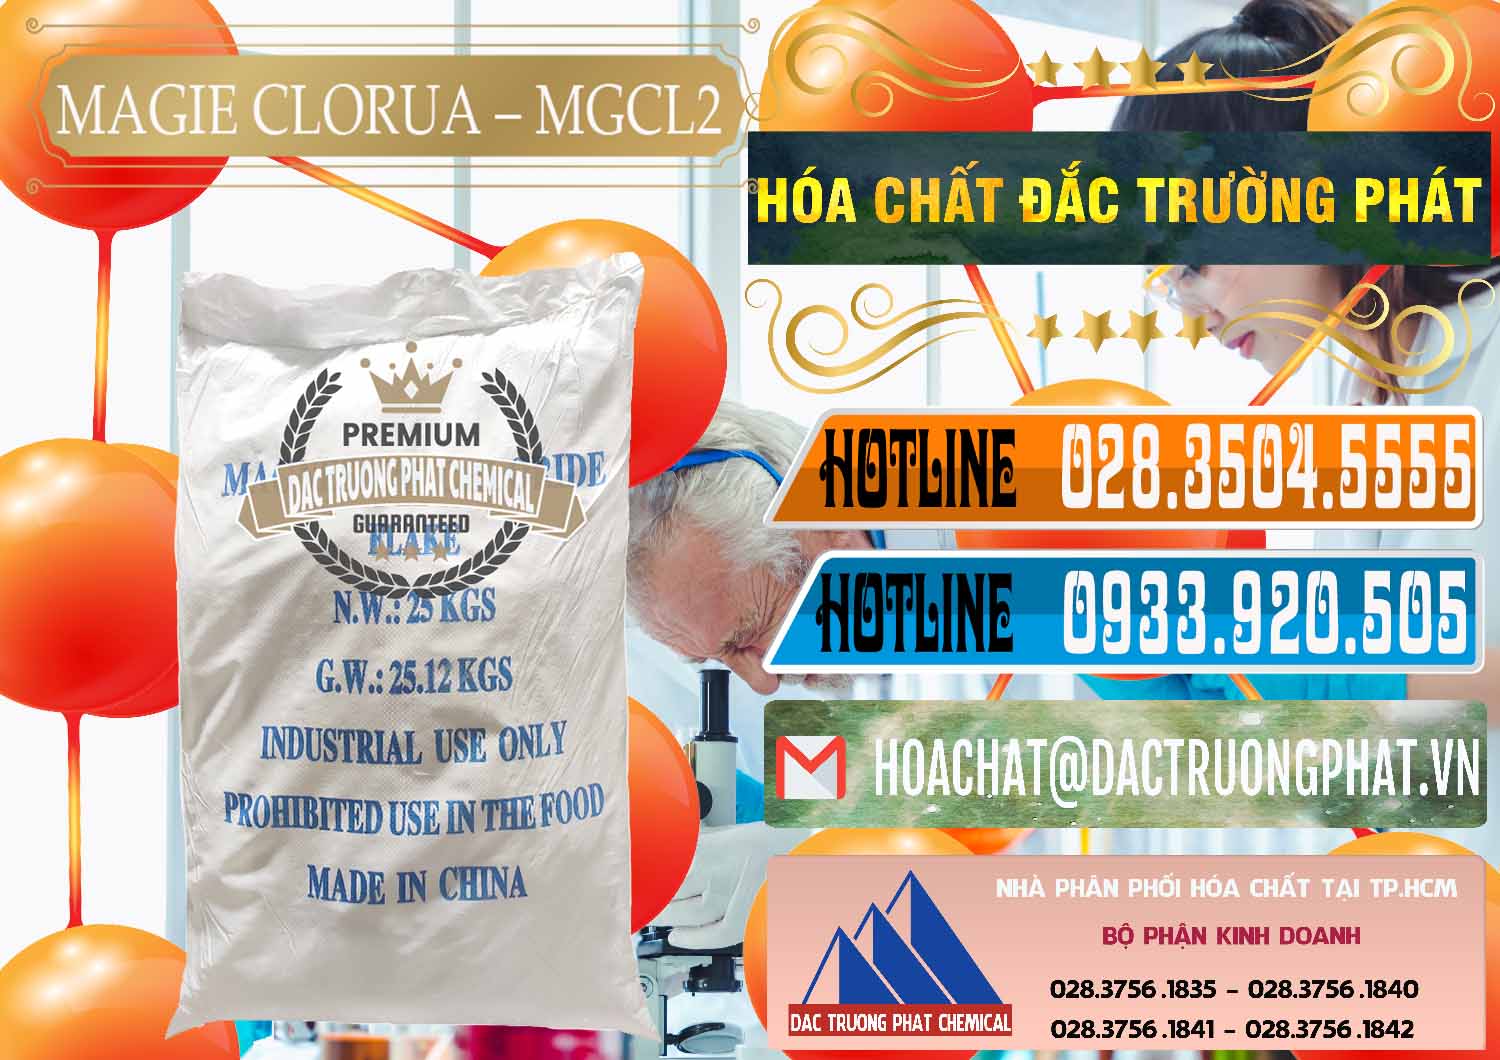 Bán ( cung cấp ) Magie Clorua – MGCL2 96% Dạng Vảy Trung Quốc China - 0091 - Nhập khẩu _ phân phối hóa chất tại TP.HCM - stmp.net